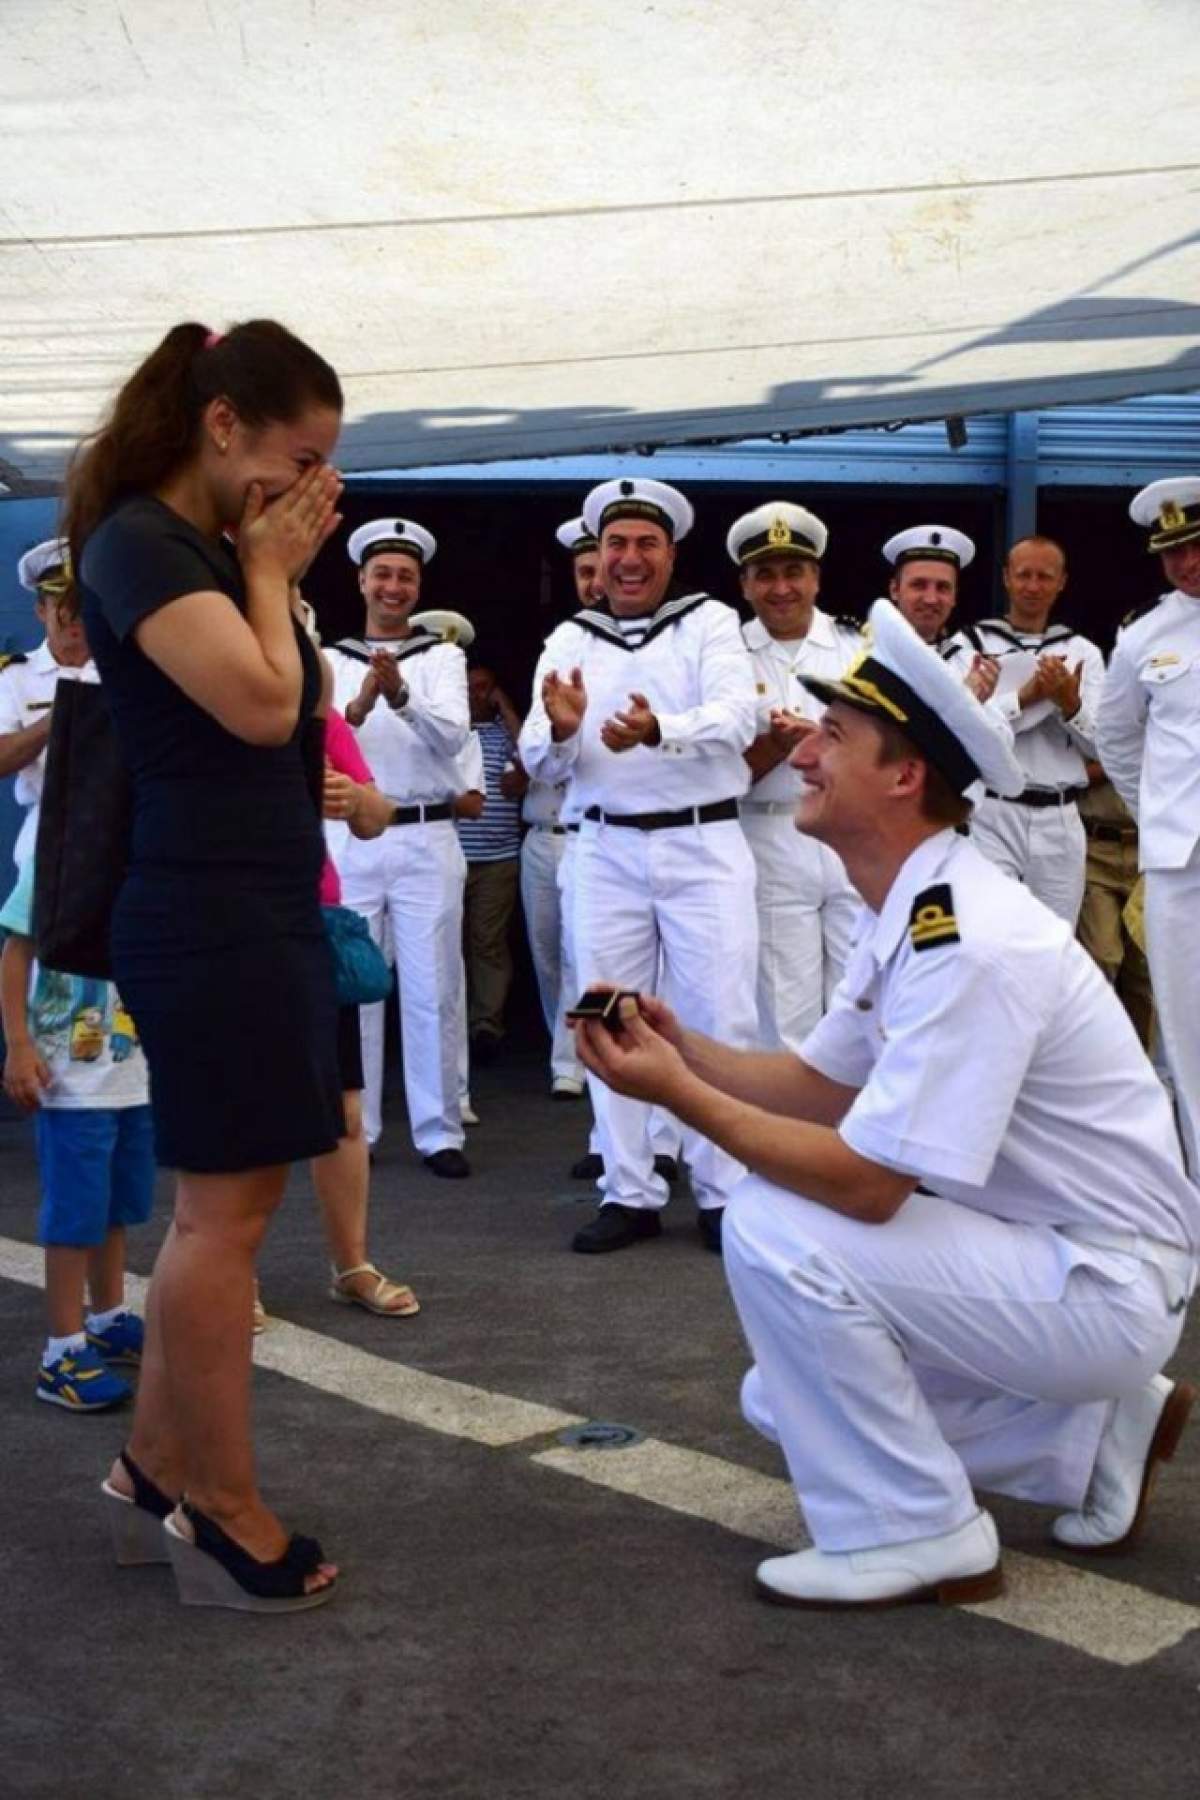 Curajos, nu glumă! Gest neaşteptat făcut de un marinar, chiar de ZIua Marinei! Toată lumea a aplaudat si l-a felicitat